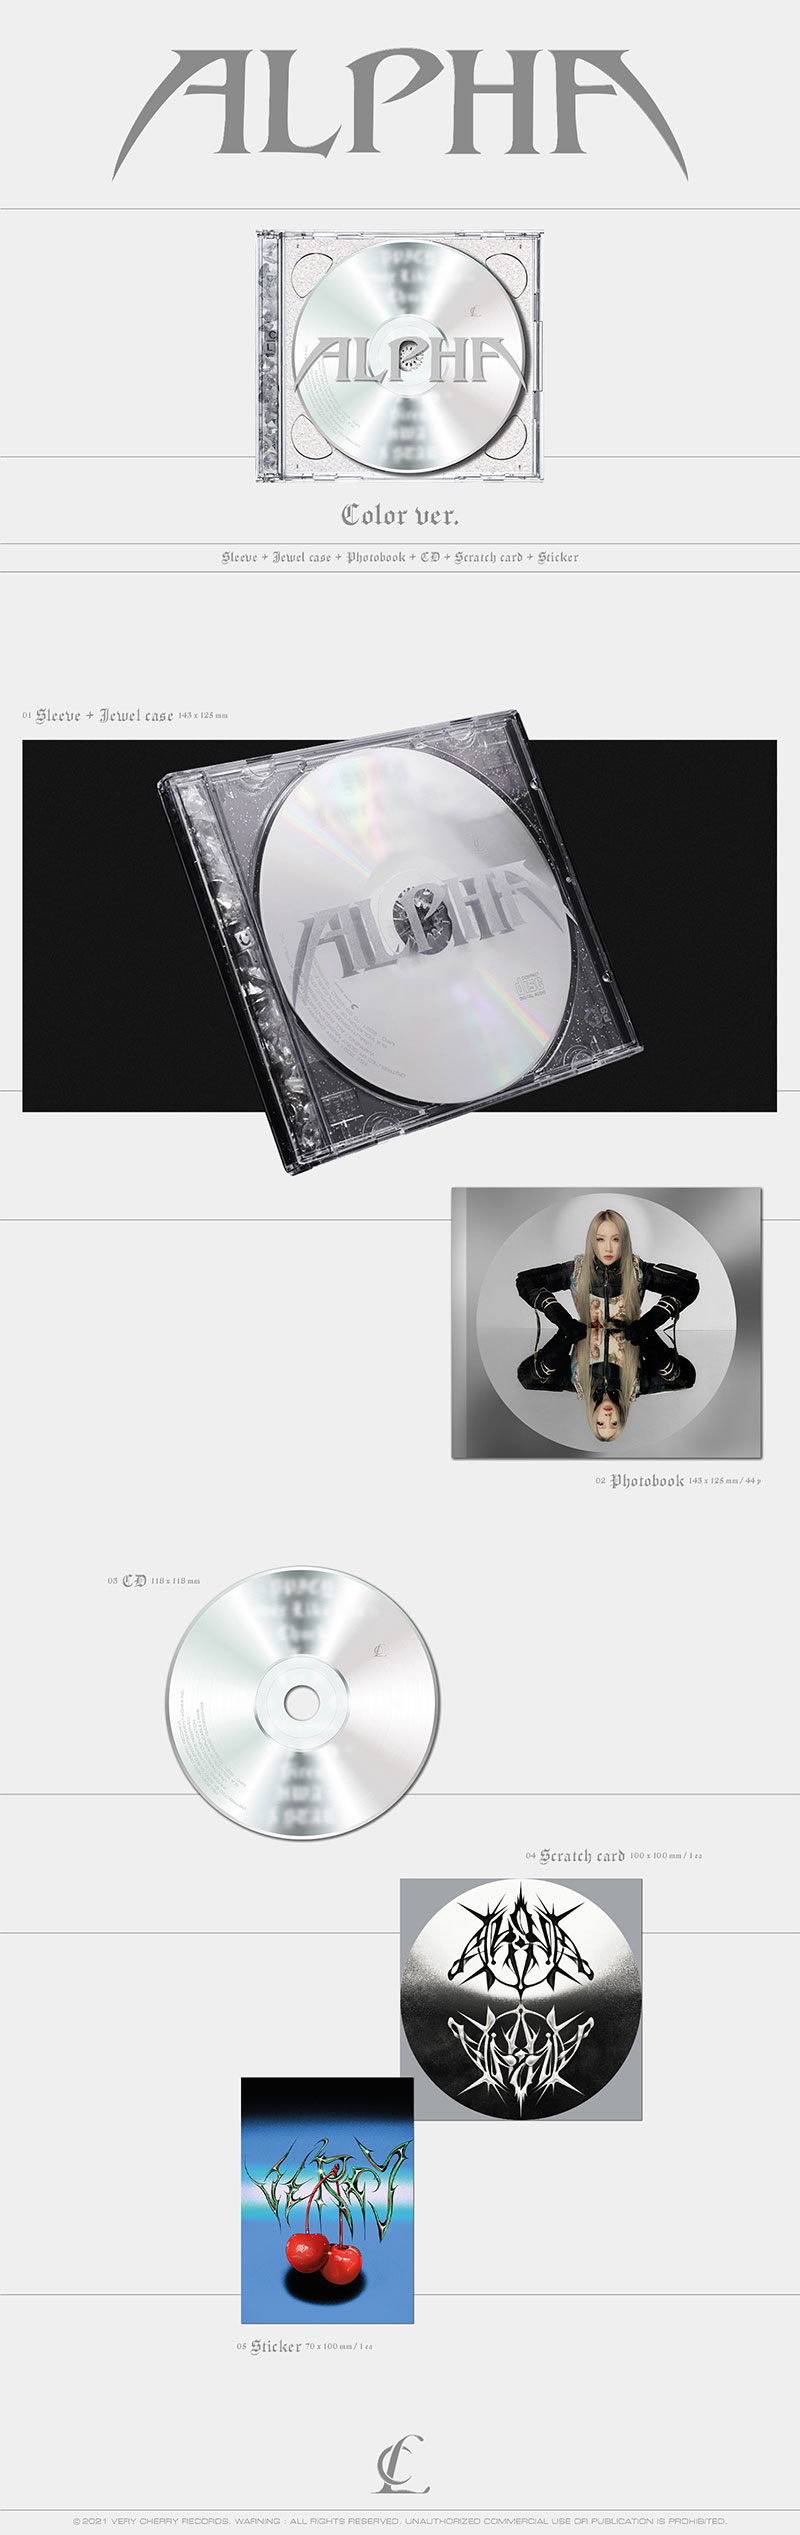 圖 CL 正規一輯ALPHA 10/20發行、曲目表